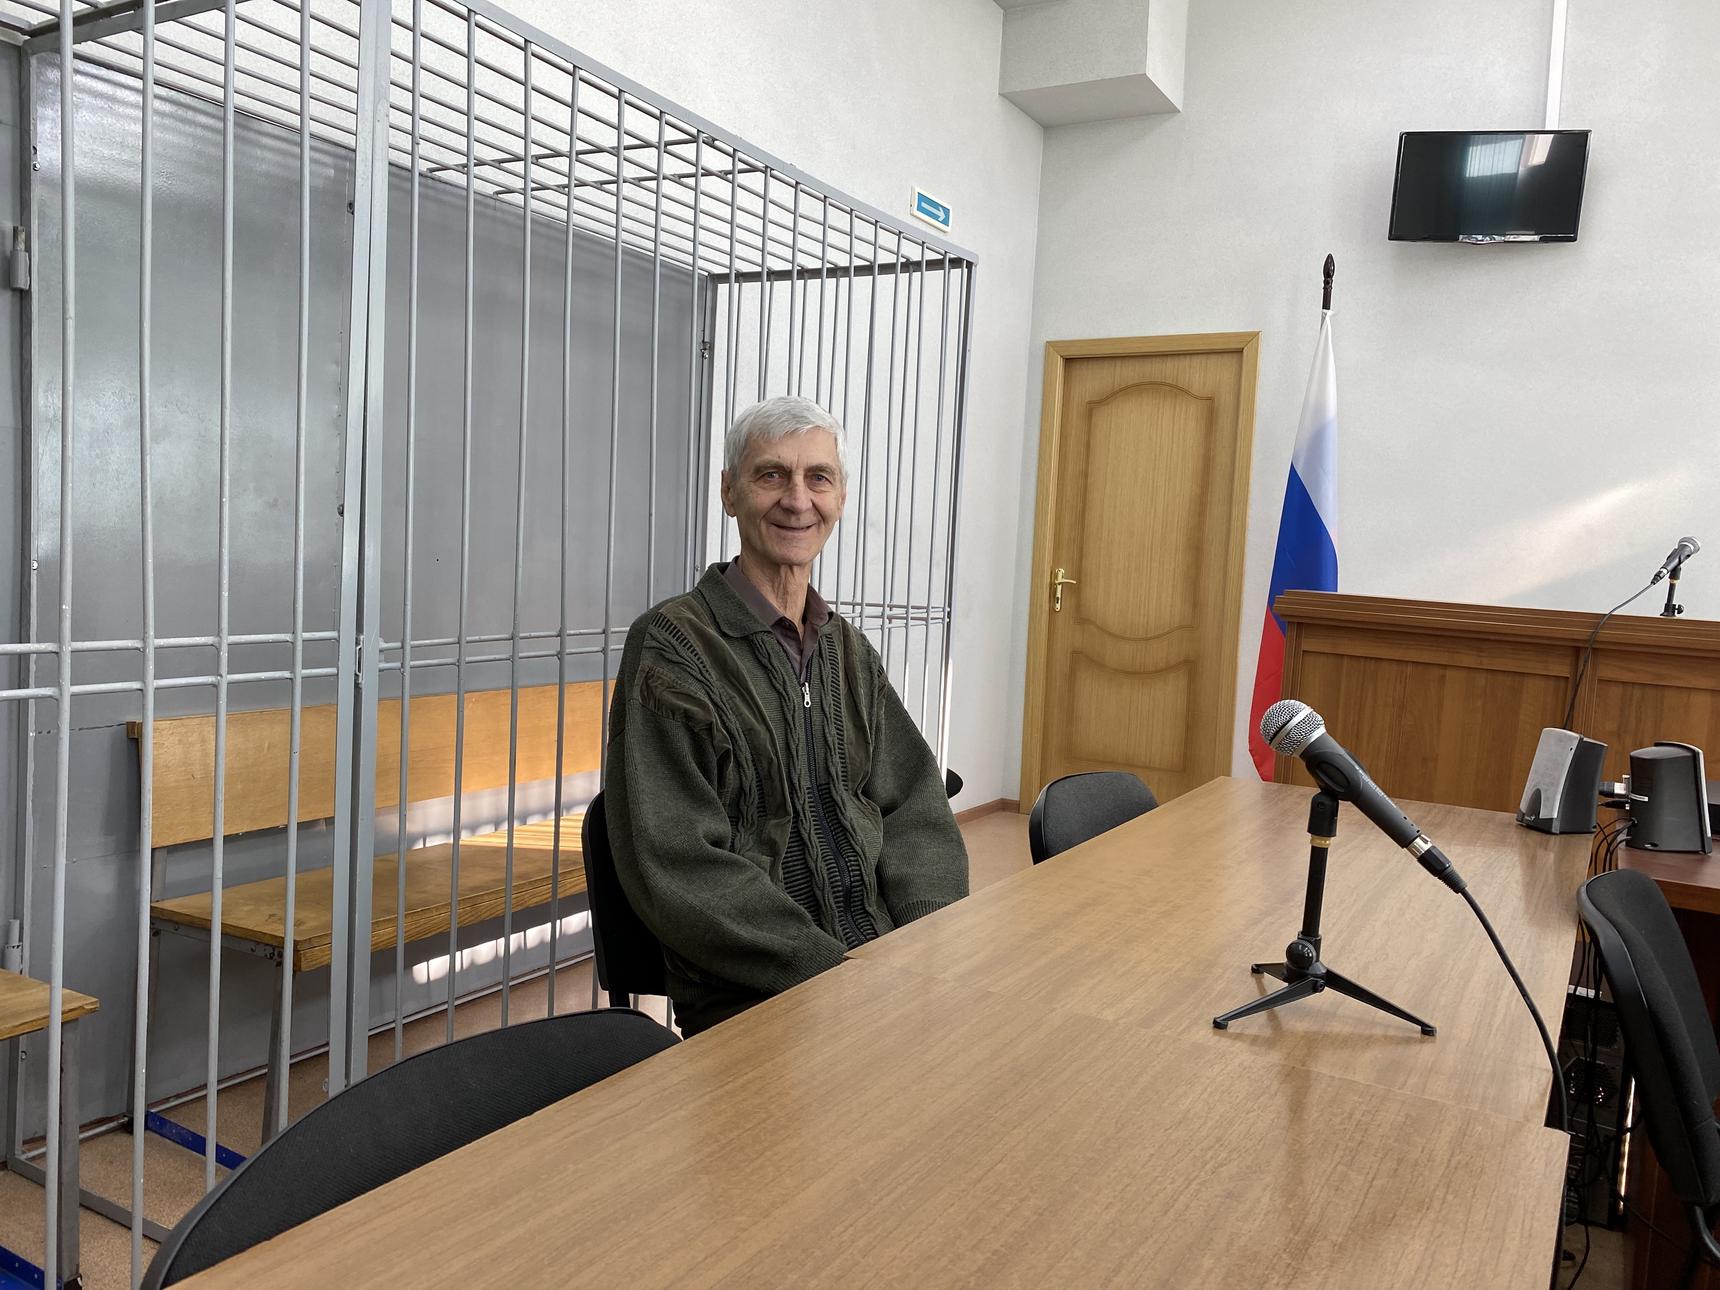 Суд в Амурской области приговорил к реальному сроку пожилого свидетеля Иеговы с онкологией